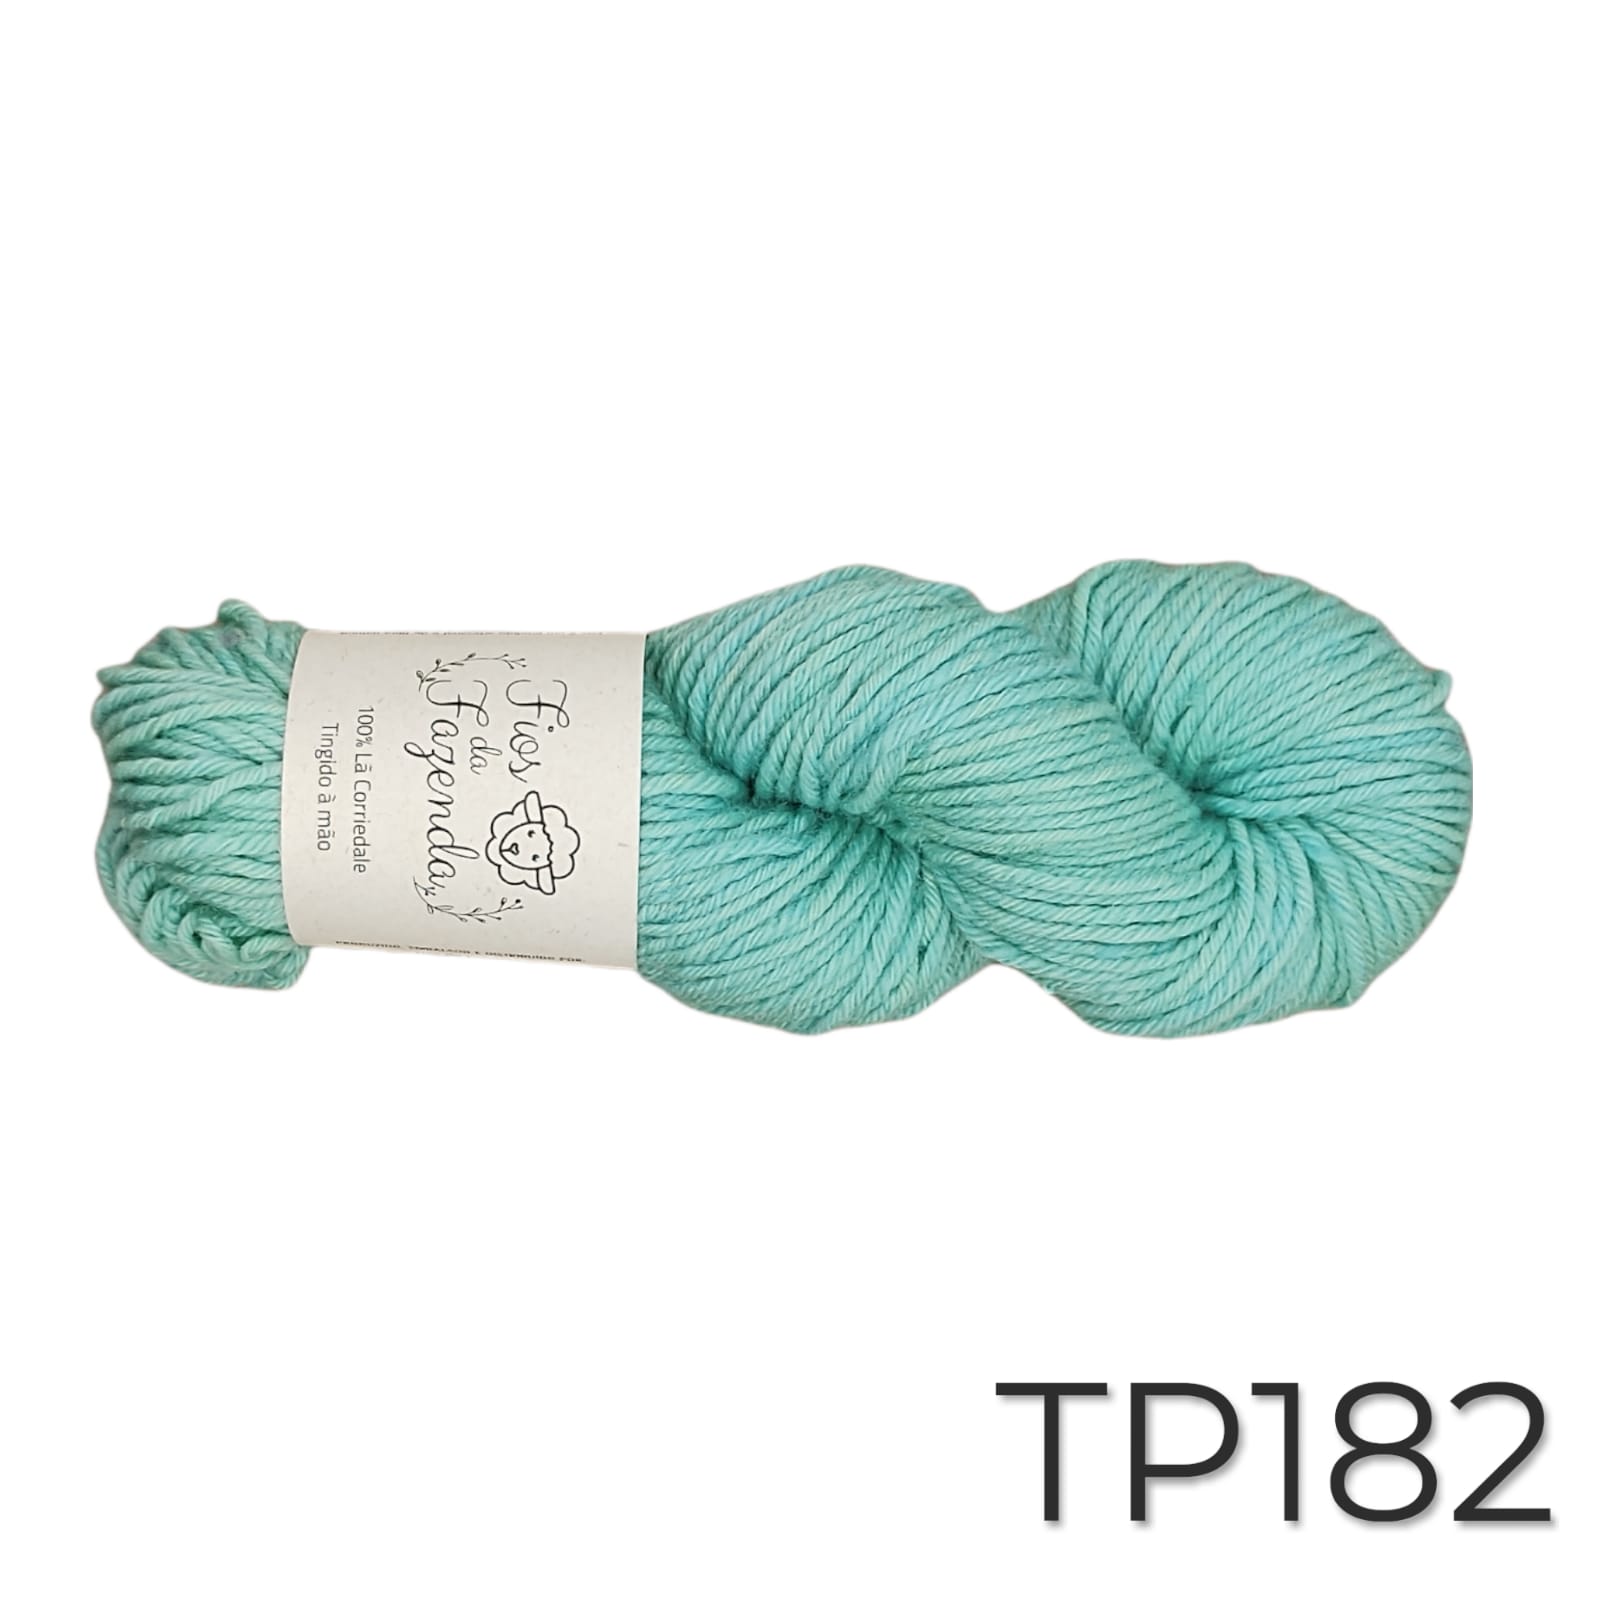 Tapiz -  Fio de lã para Tapeçaria - 115m / 100g - Foto 18